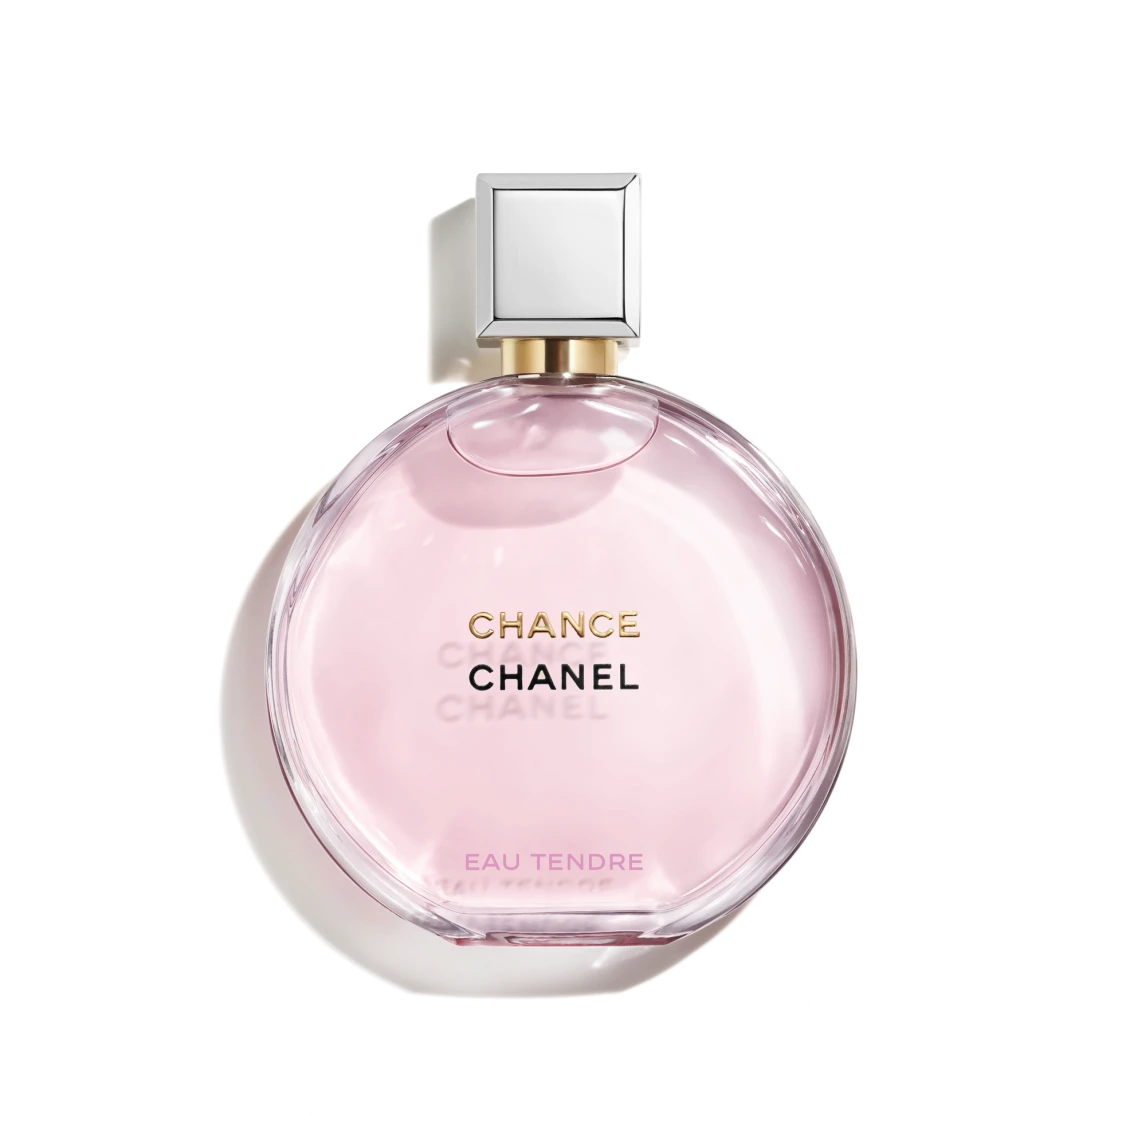 Chanel pokloni za Valentinovo parfem Dan zaljubljenih za nju hello magazine croatia pokloni za Valentinovo za nju (1)